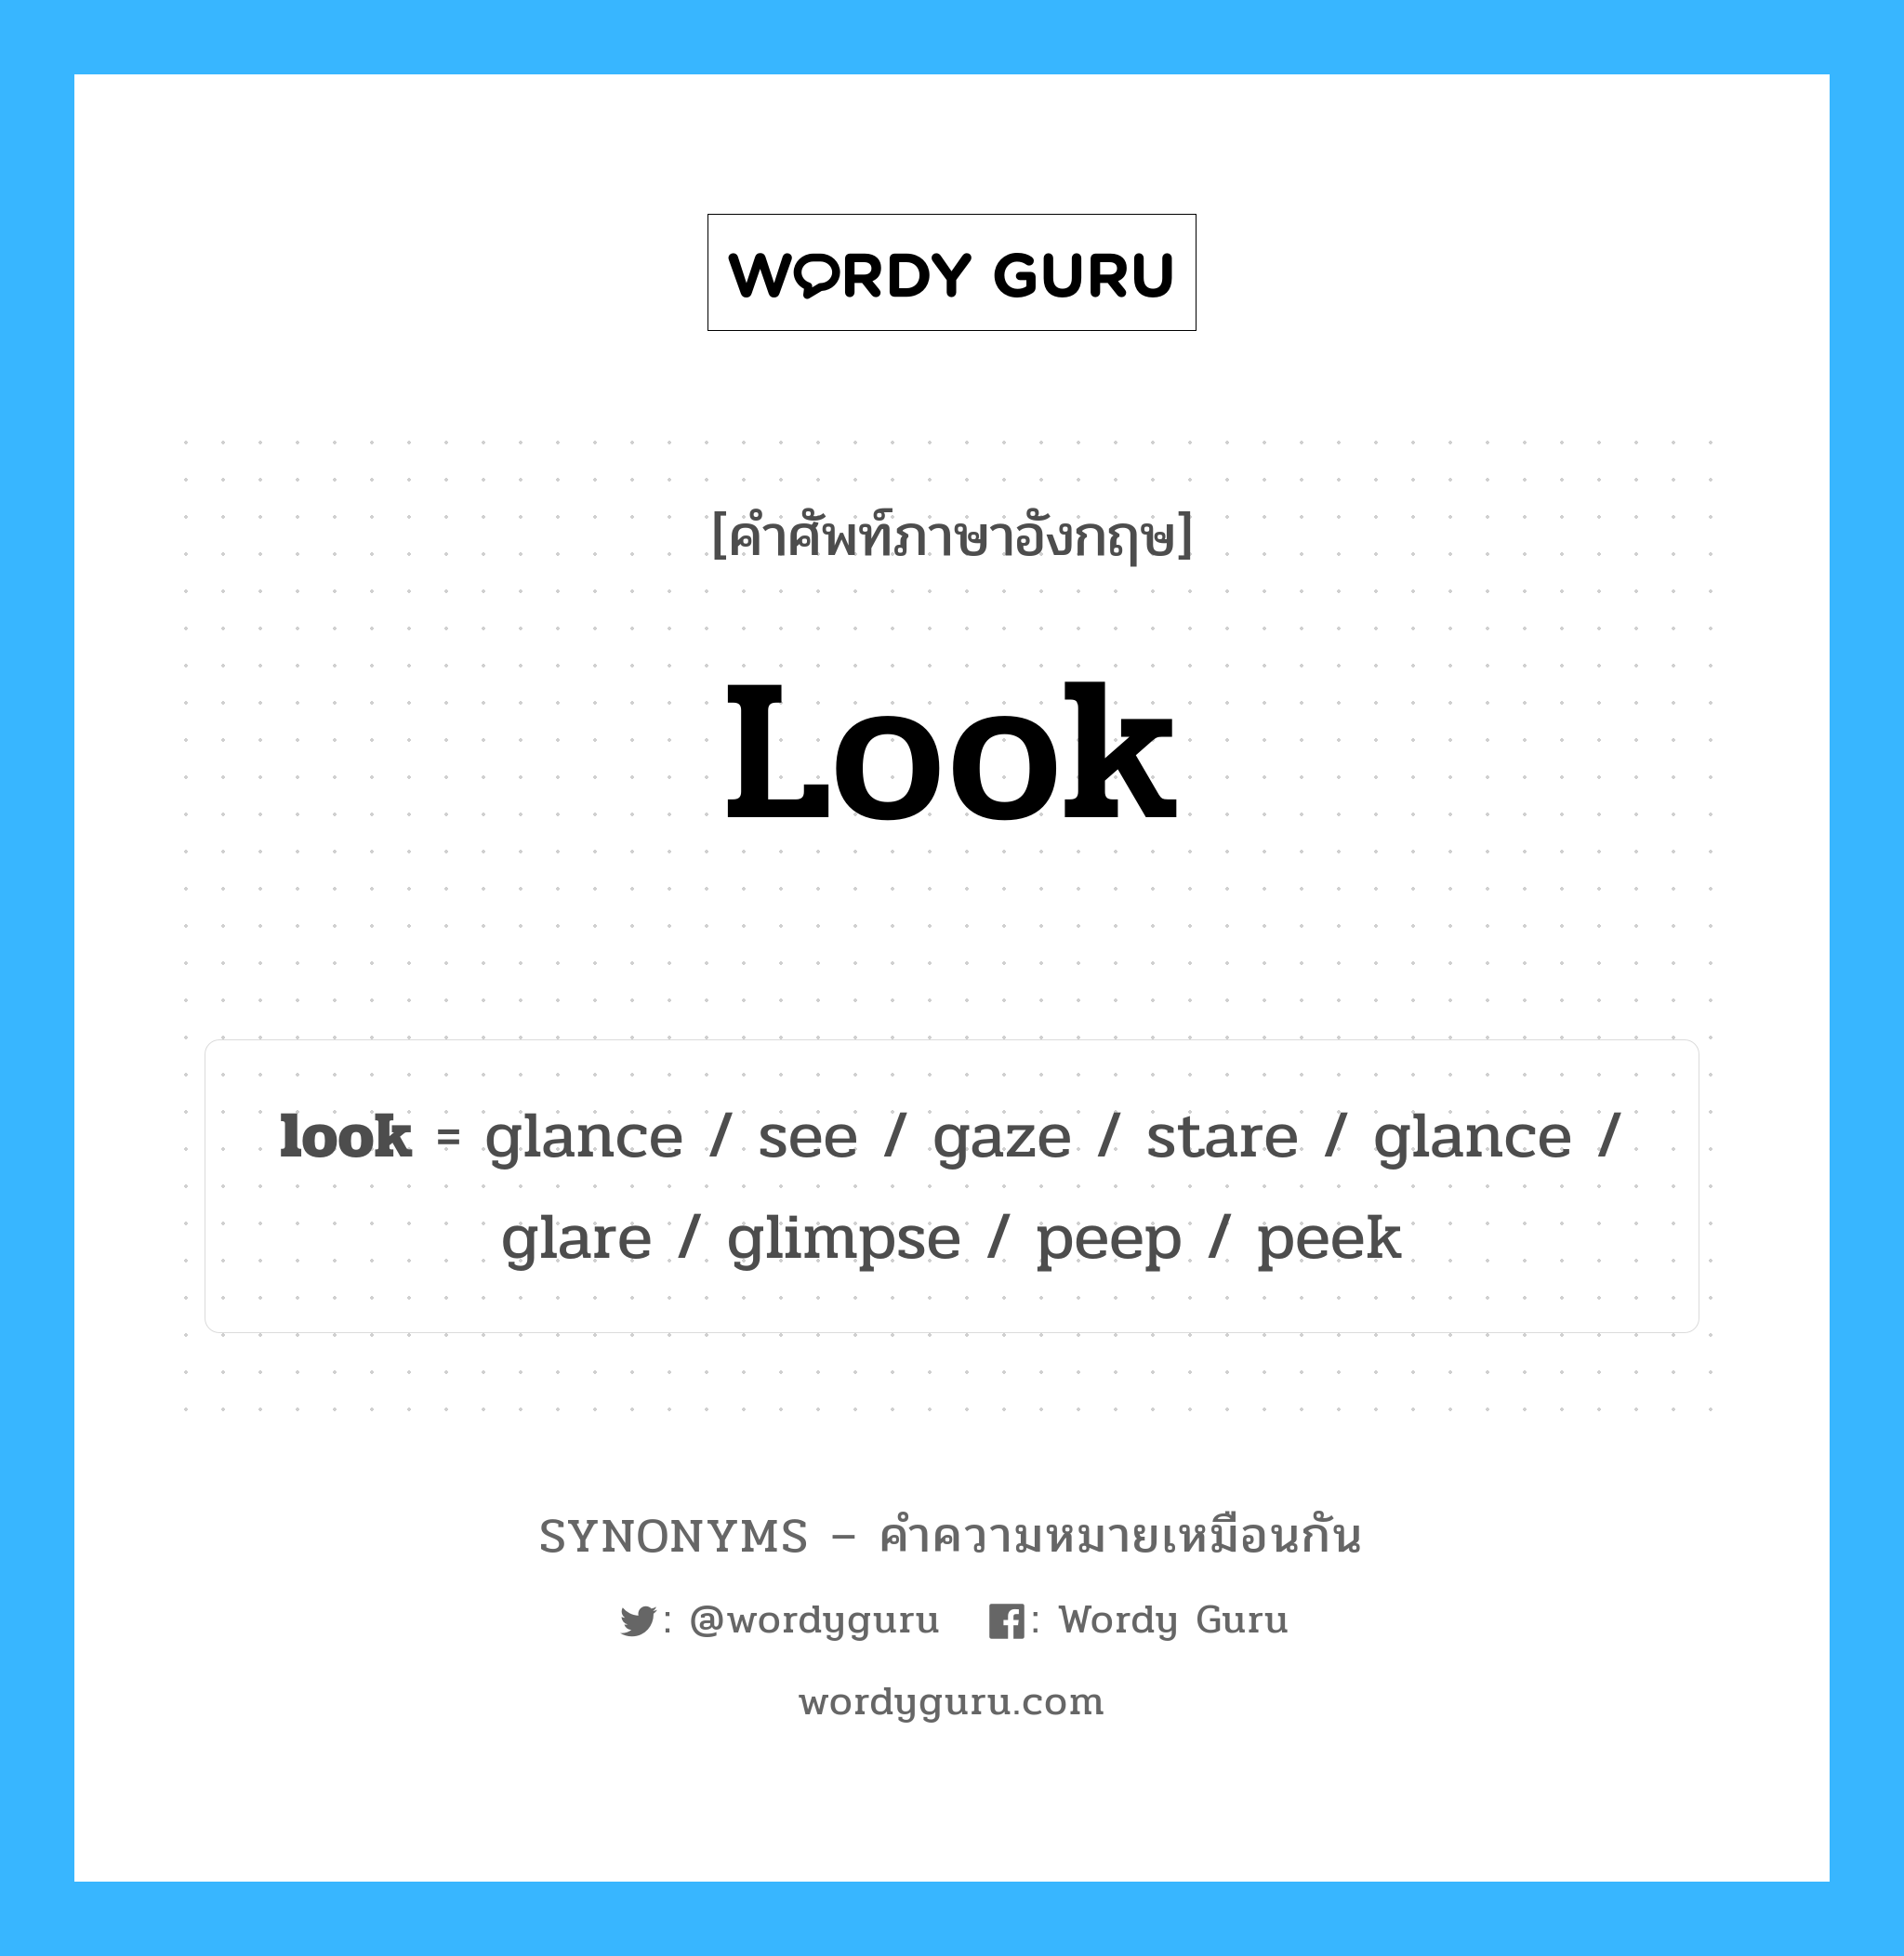 peek เป็นหนึ่งใน look และมีคำอื่น ๆ อีกดังนี้, คำศัพท์ภาษาอังกฤษ peek ความหมายคล้ายกันกับ look แปลว่า peek หมวด look